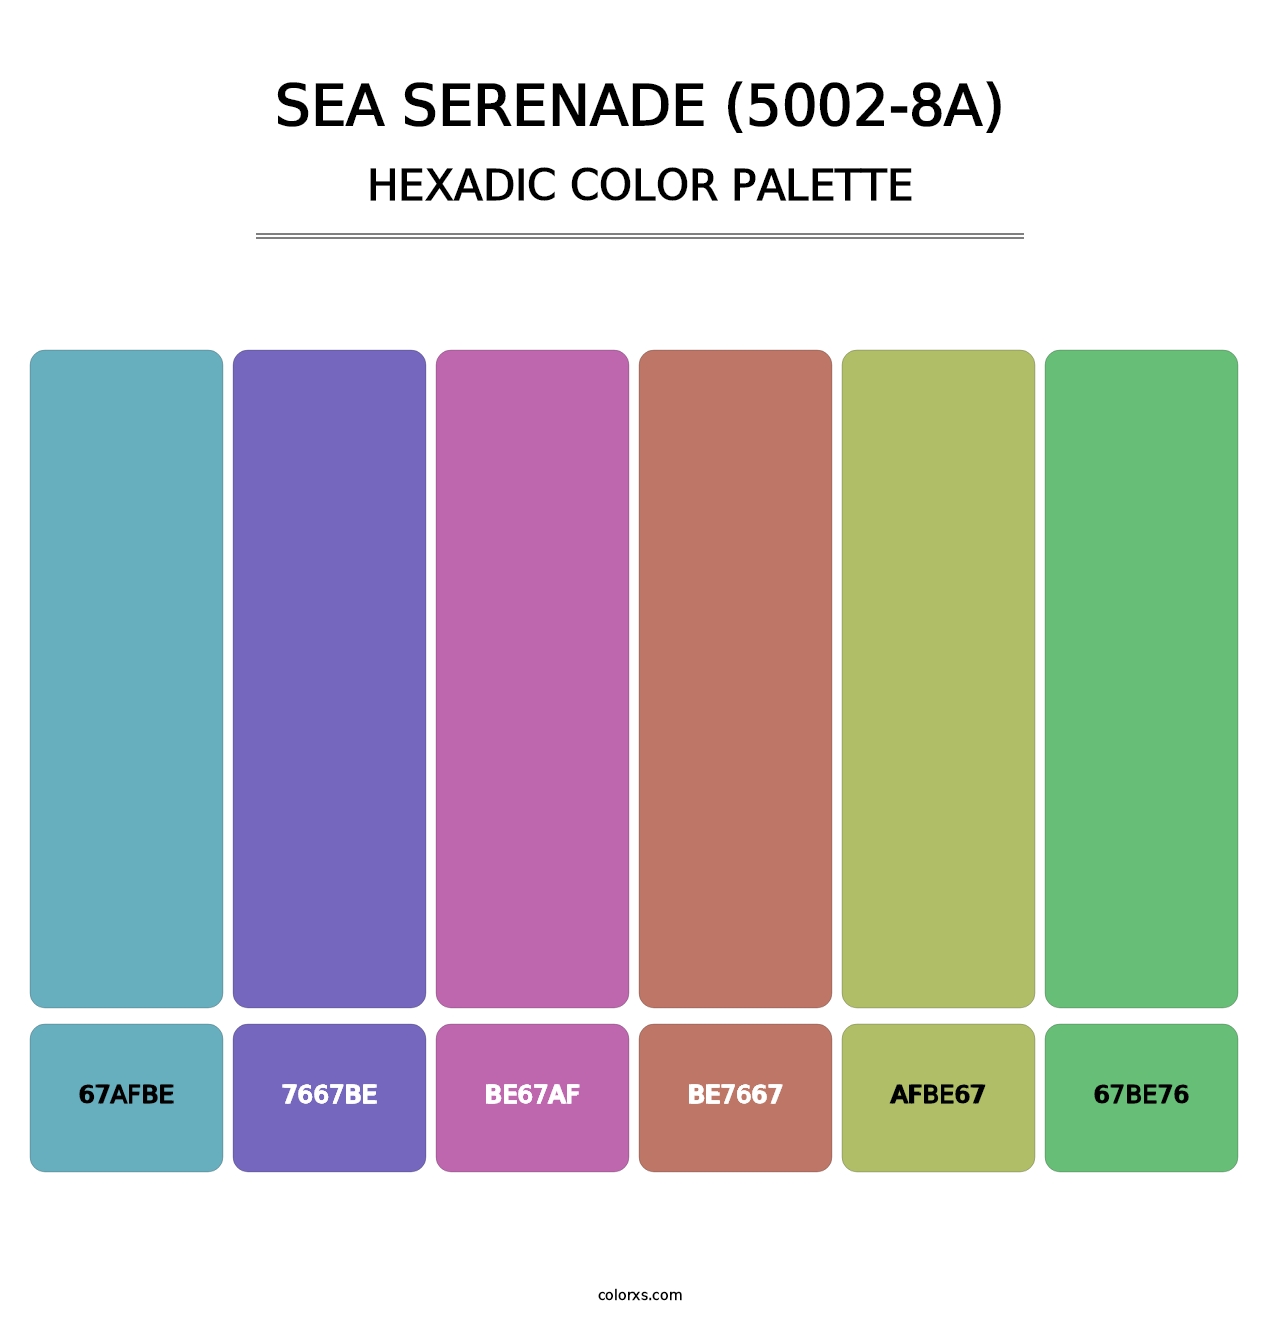 Sea Serenade (5002-8A) - Hexadic Color Palette